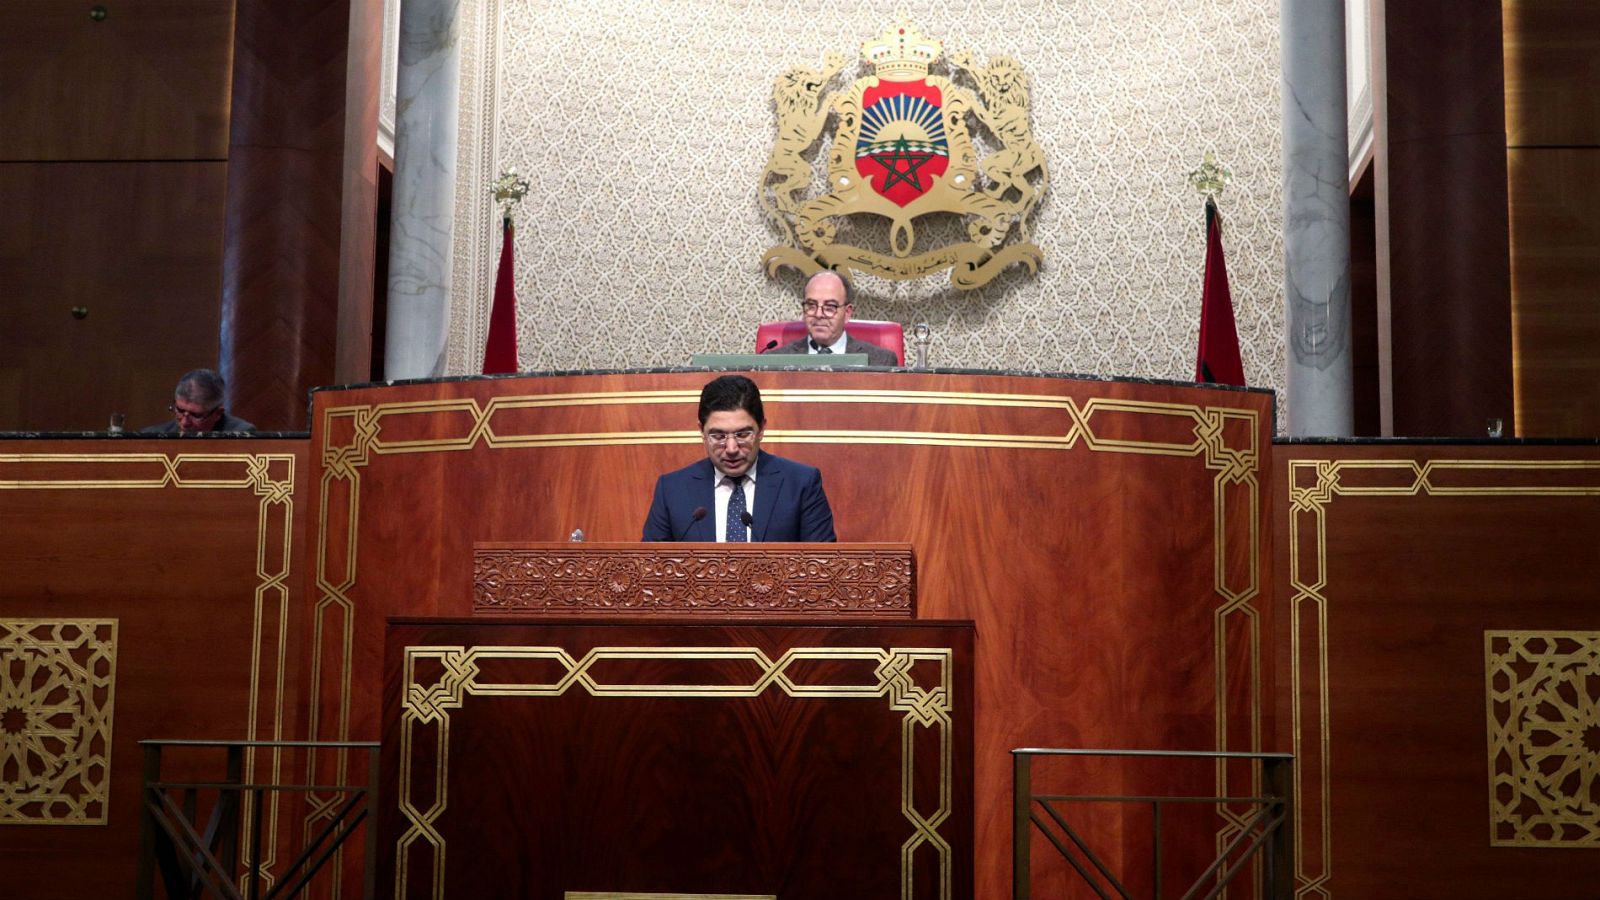 La Cámara Alta marroquí aprueba las leyes de delimitación marítima